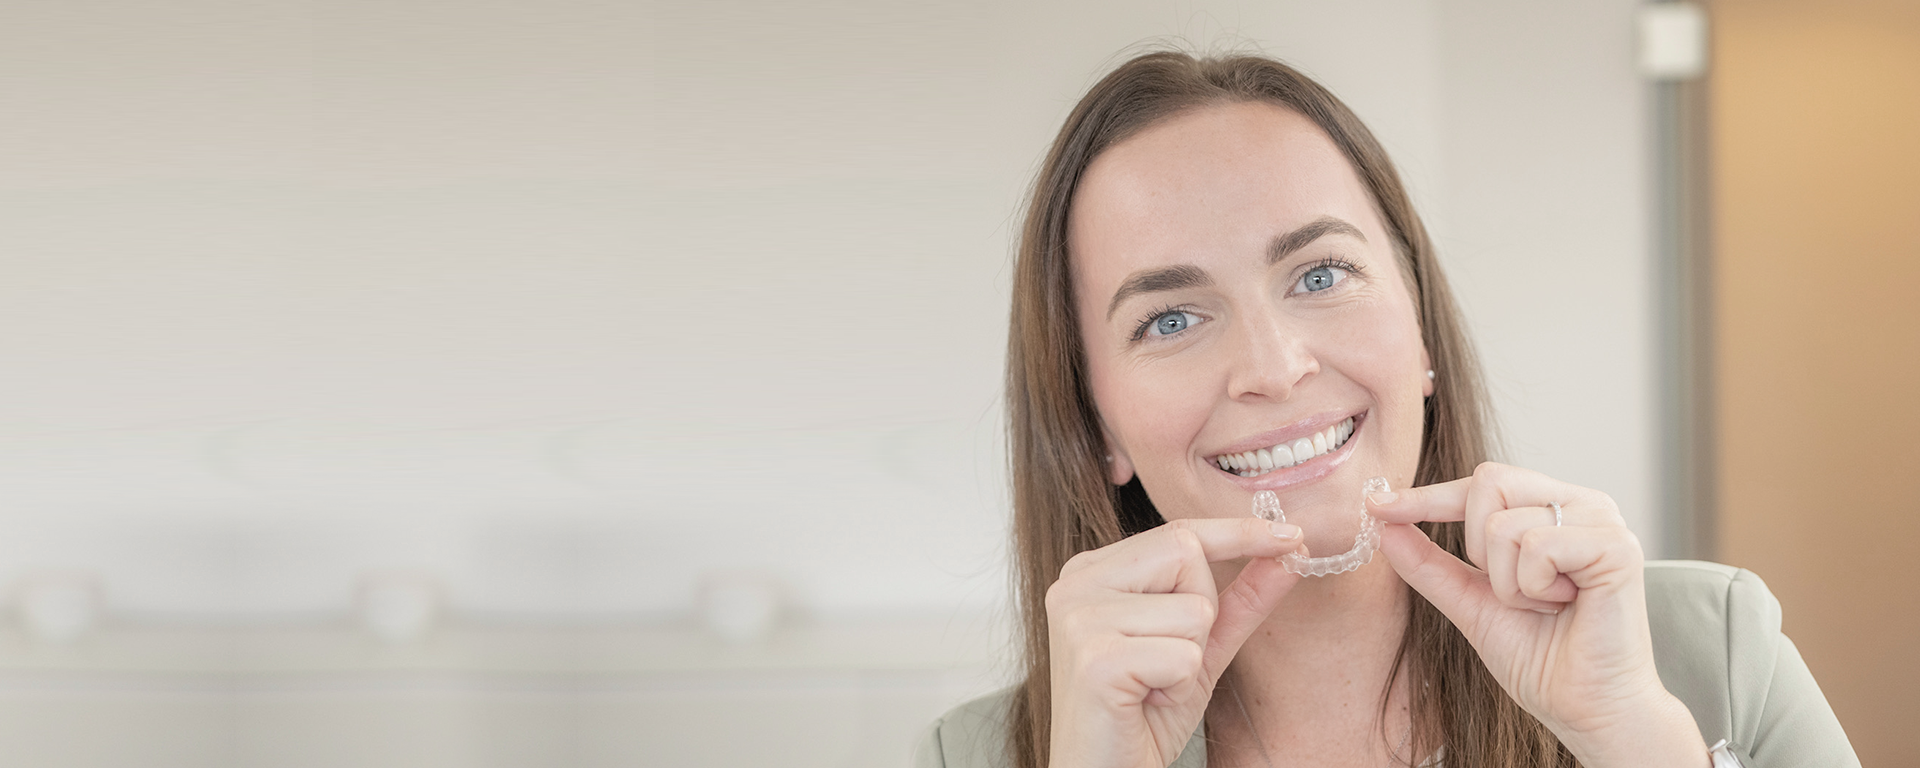 Lächelnde Frau mit transparenter Zahnschiene in der Hand